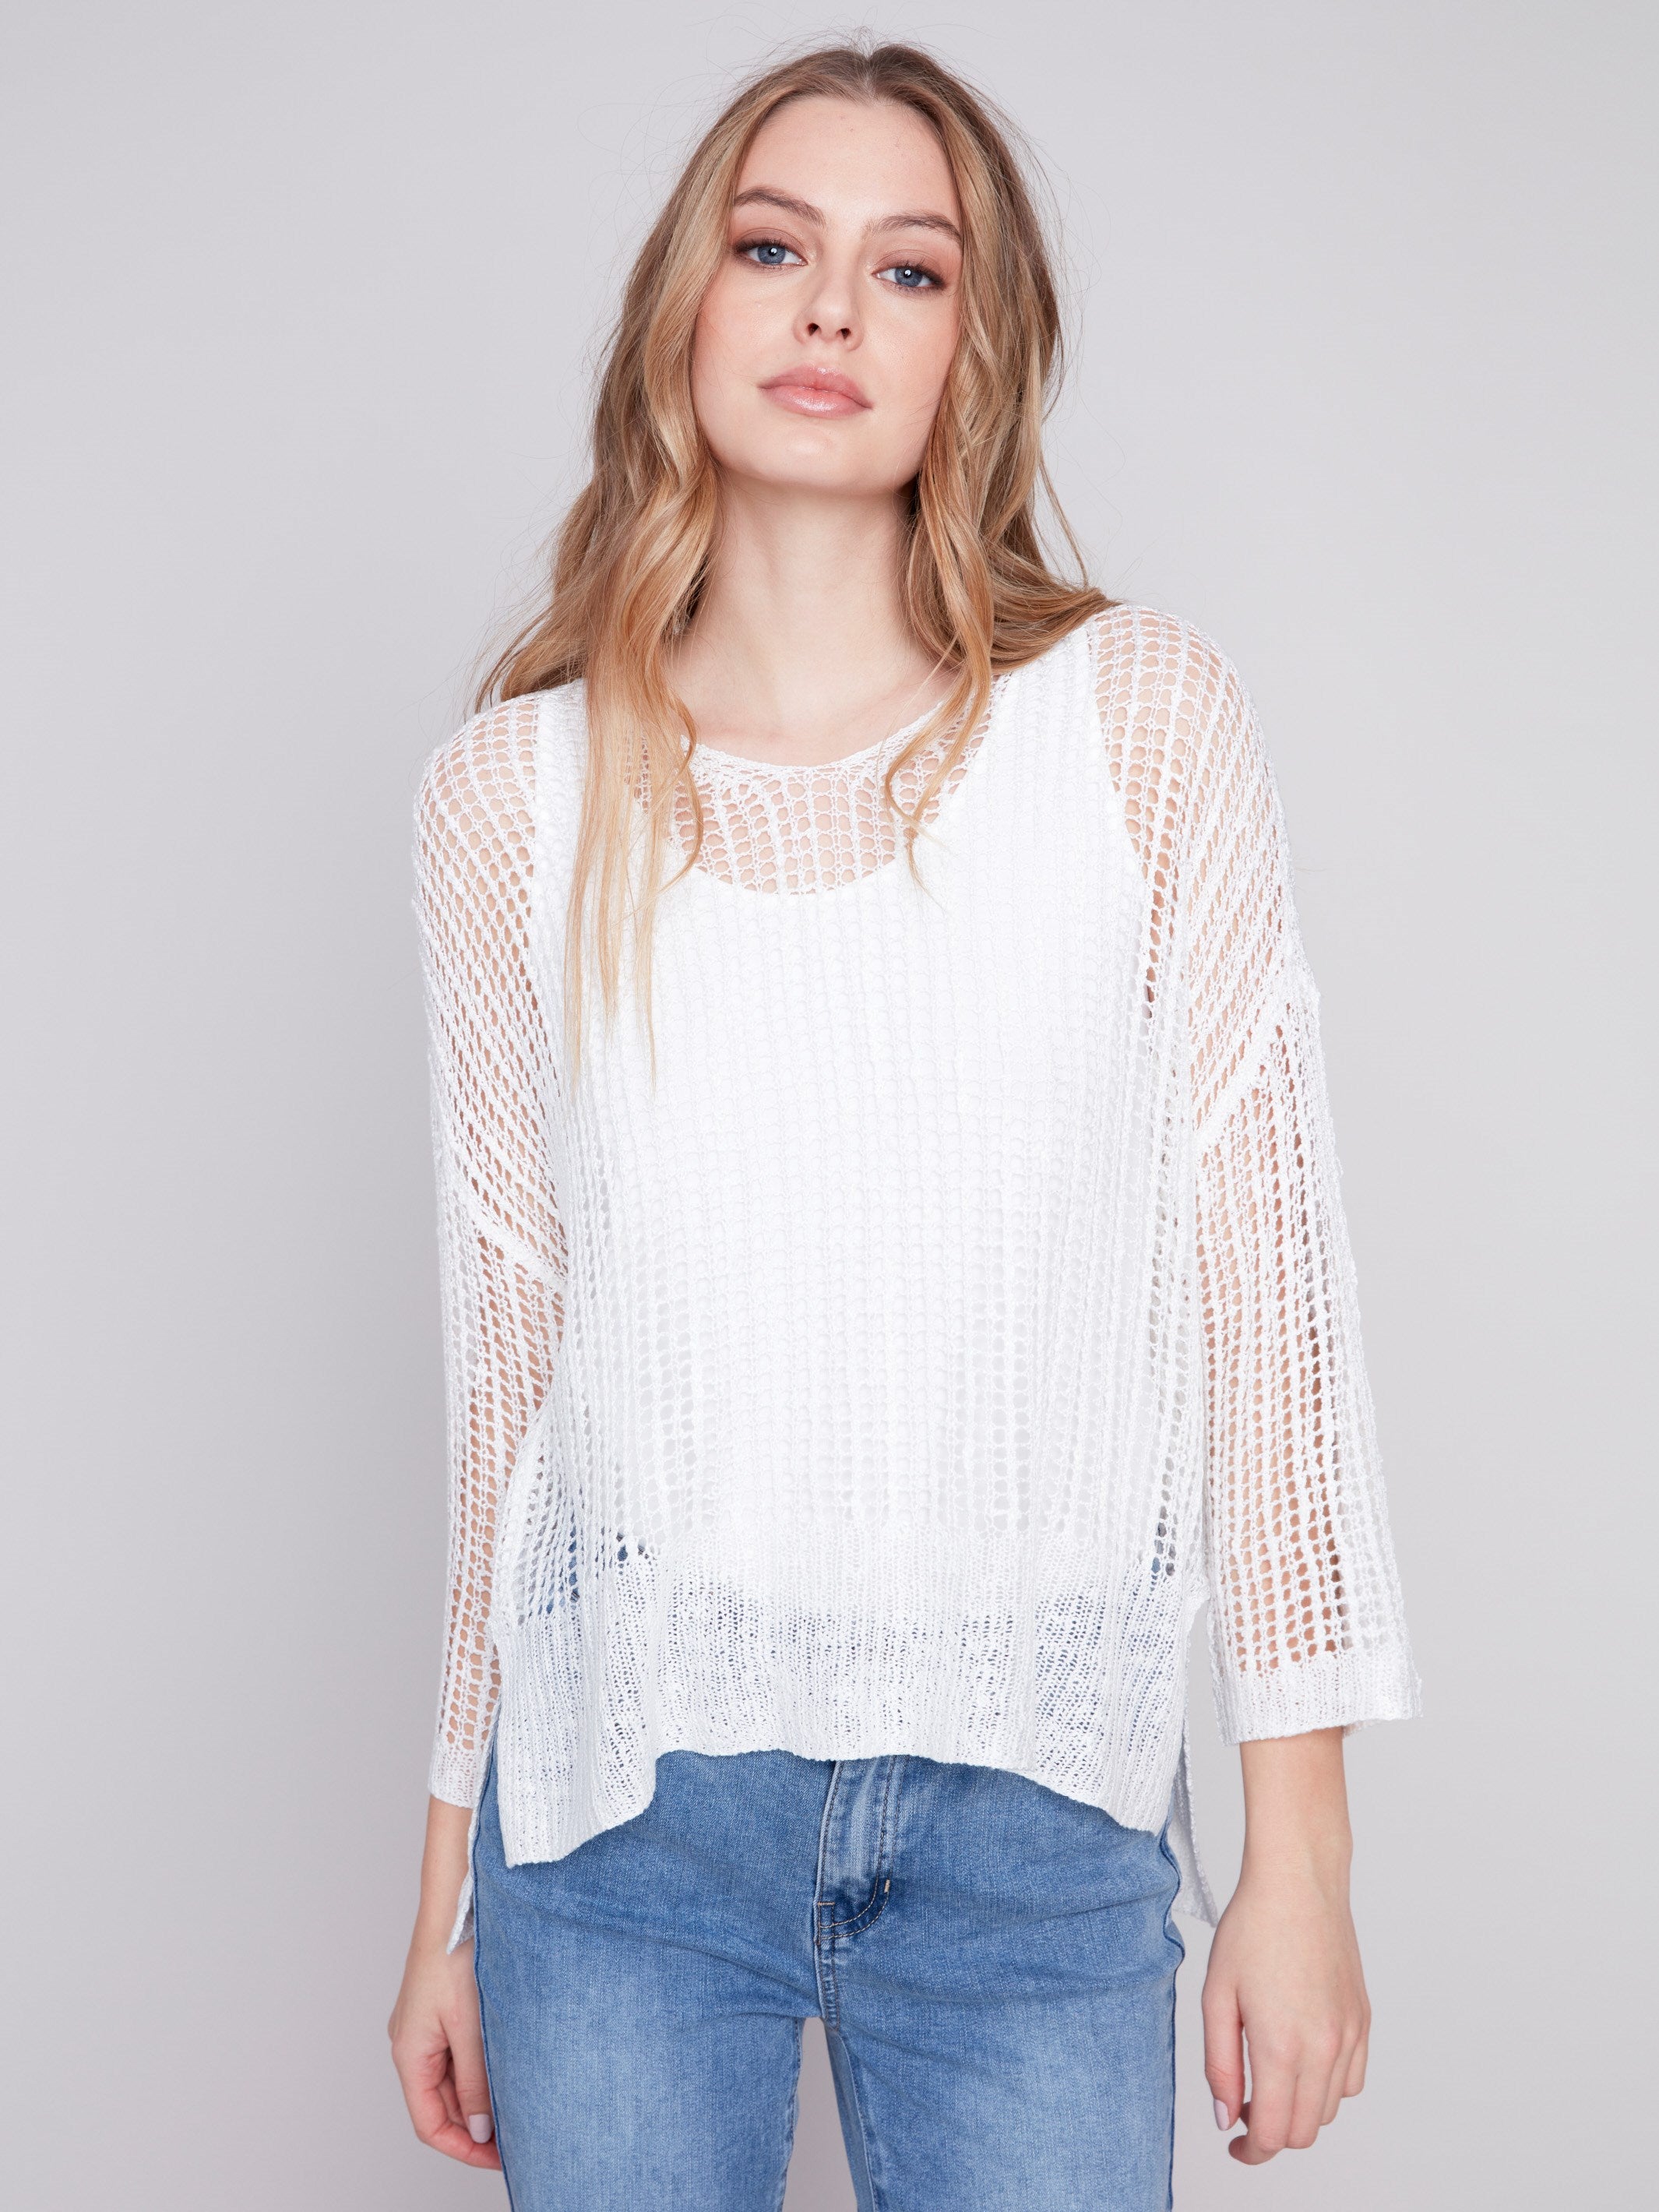 Charlie B Fishnet Crochet Sweater - White - Image 1